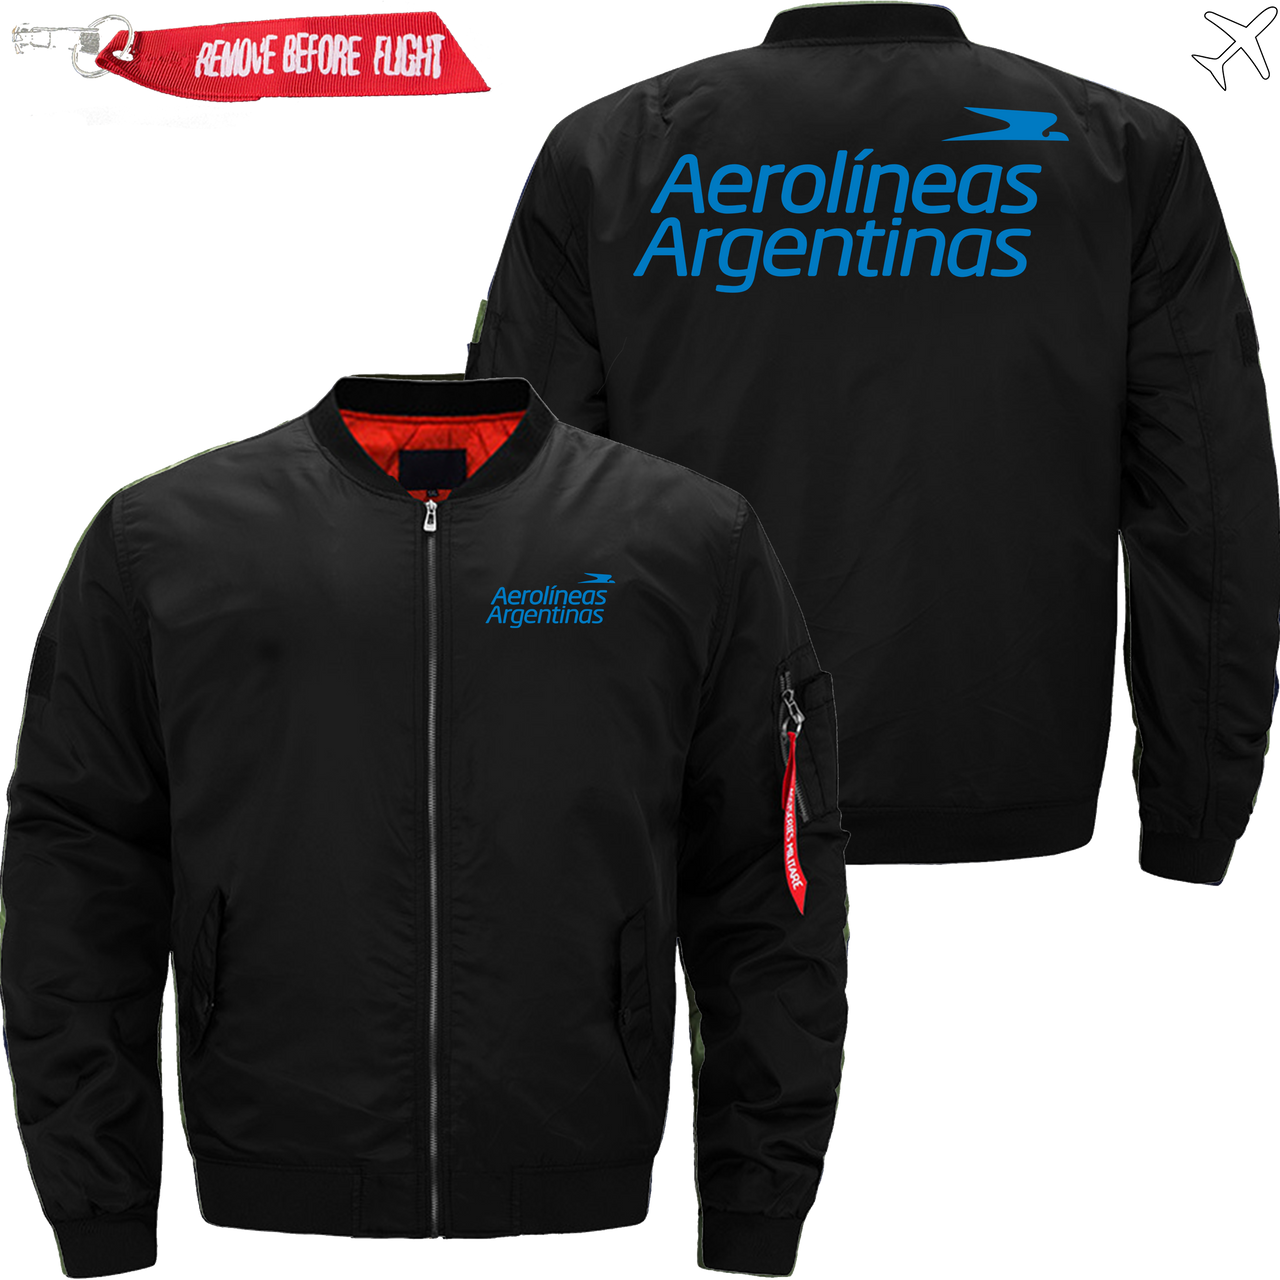 ARGENTINAS AIRLINE JACKET